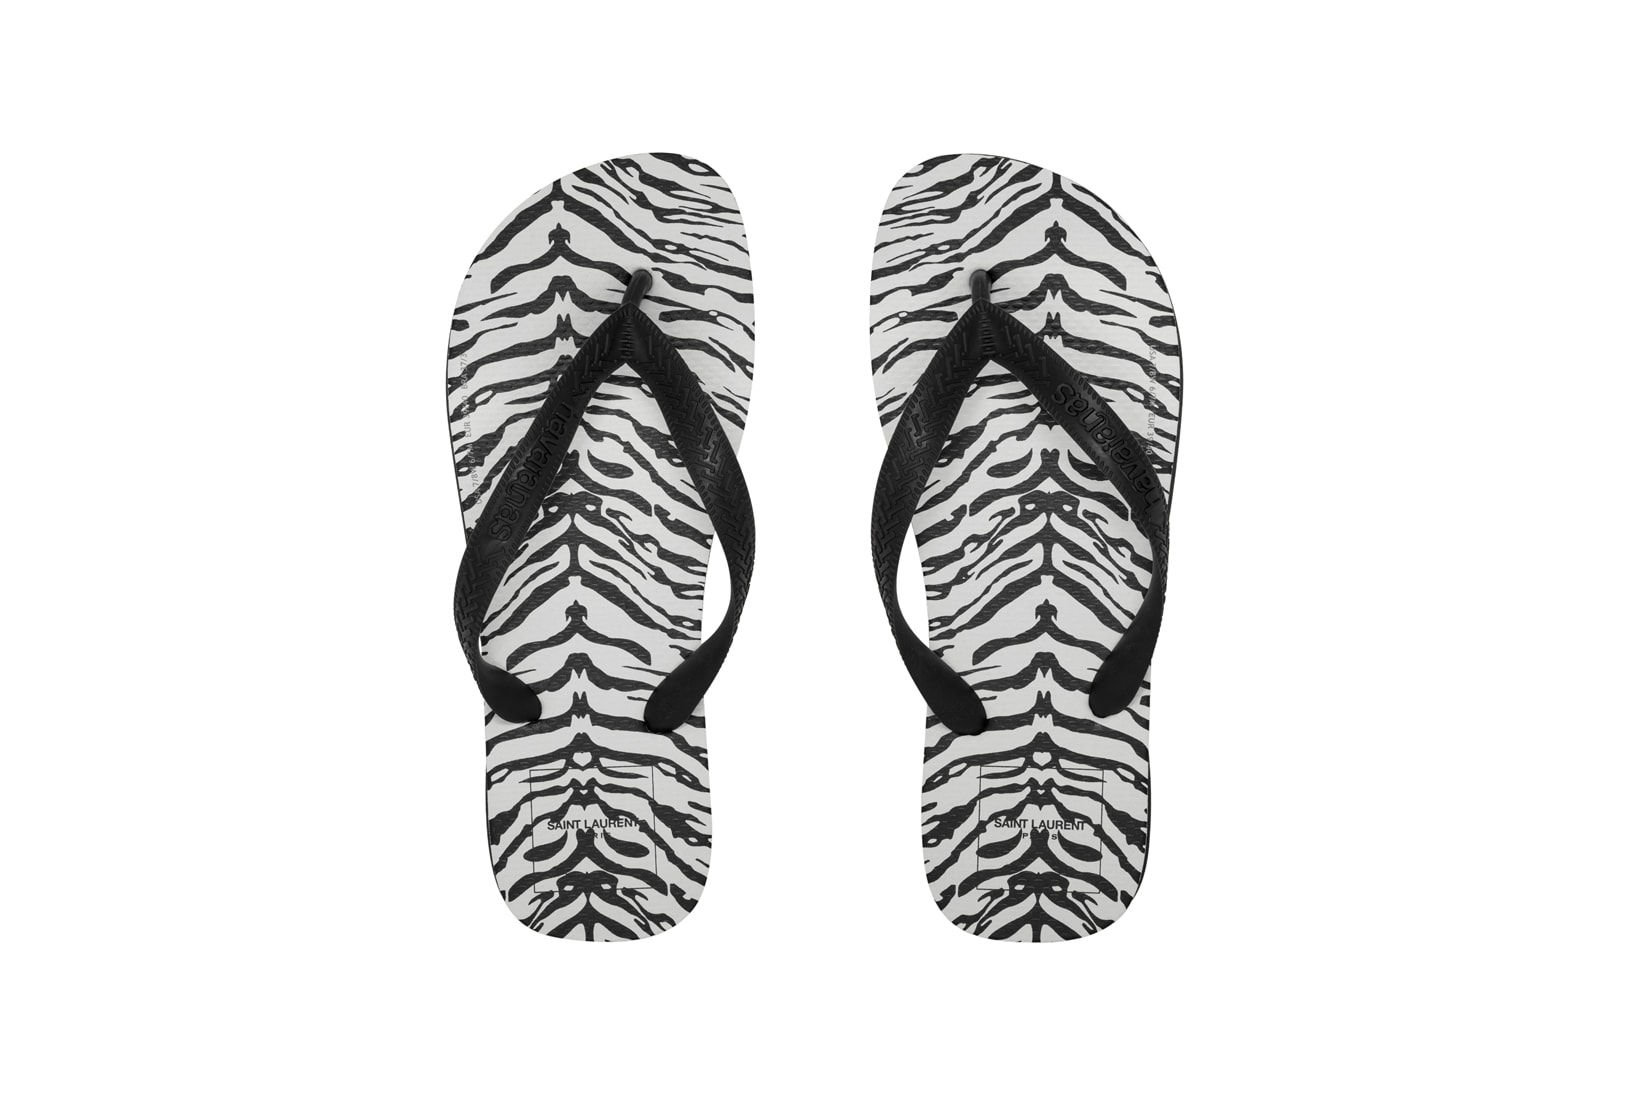 Havaianas x Saint Laurent Zebra Sandals Black White